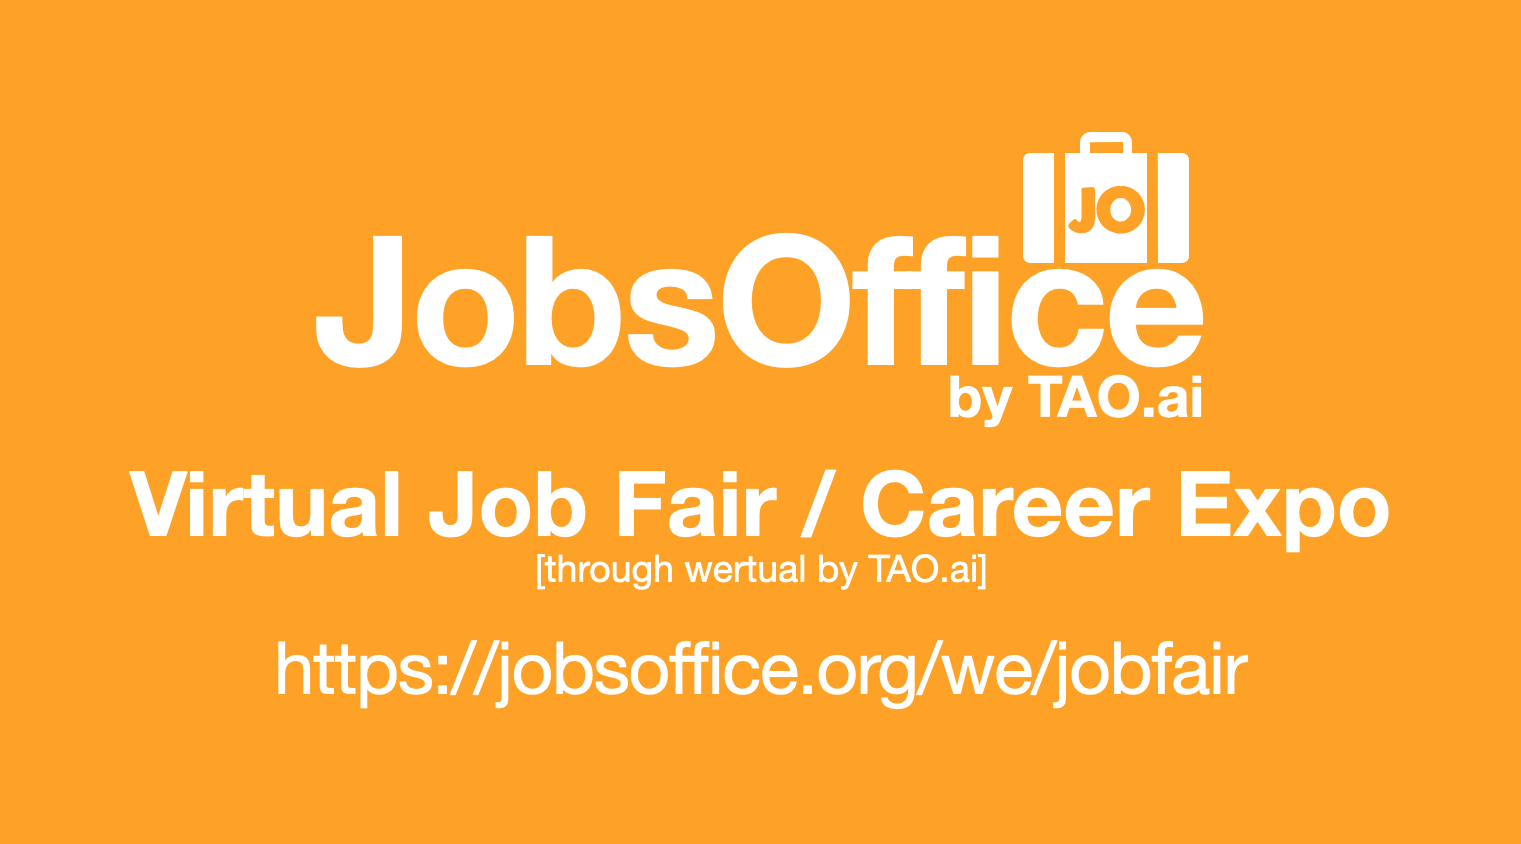 JobsOffice Virtual Job Fair / Career Expo Event #San Francisco